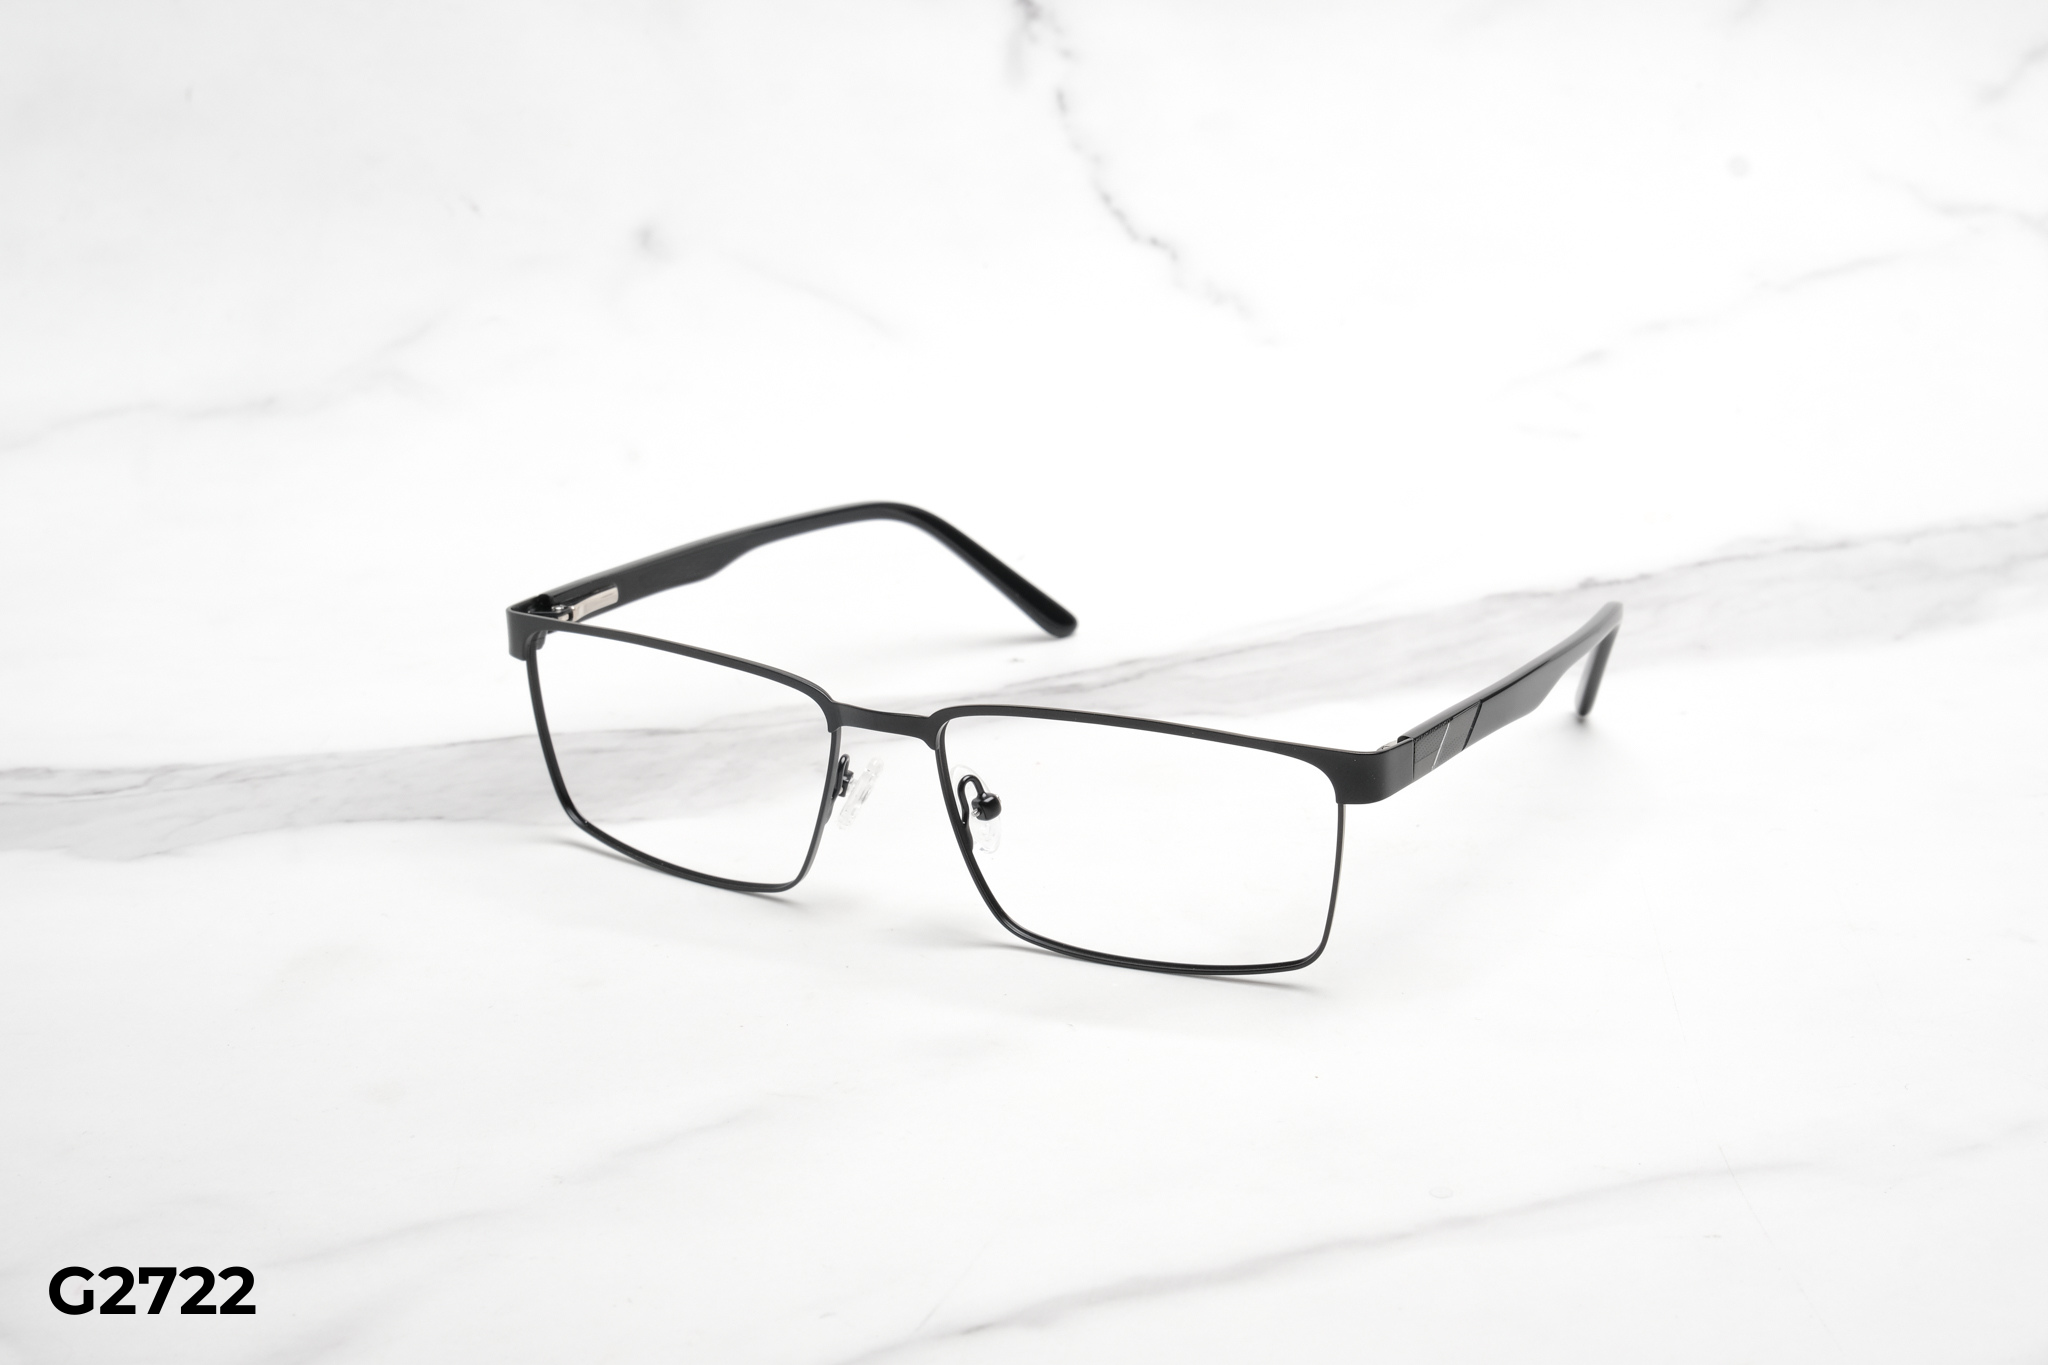  Rex-ton Eyewear - Glasses - G2722 